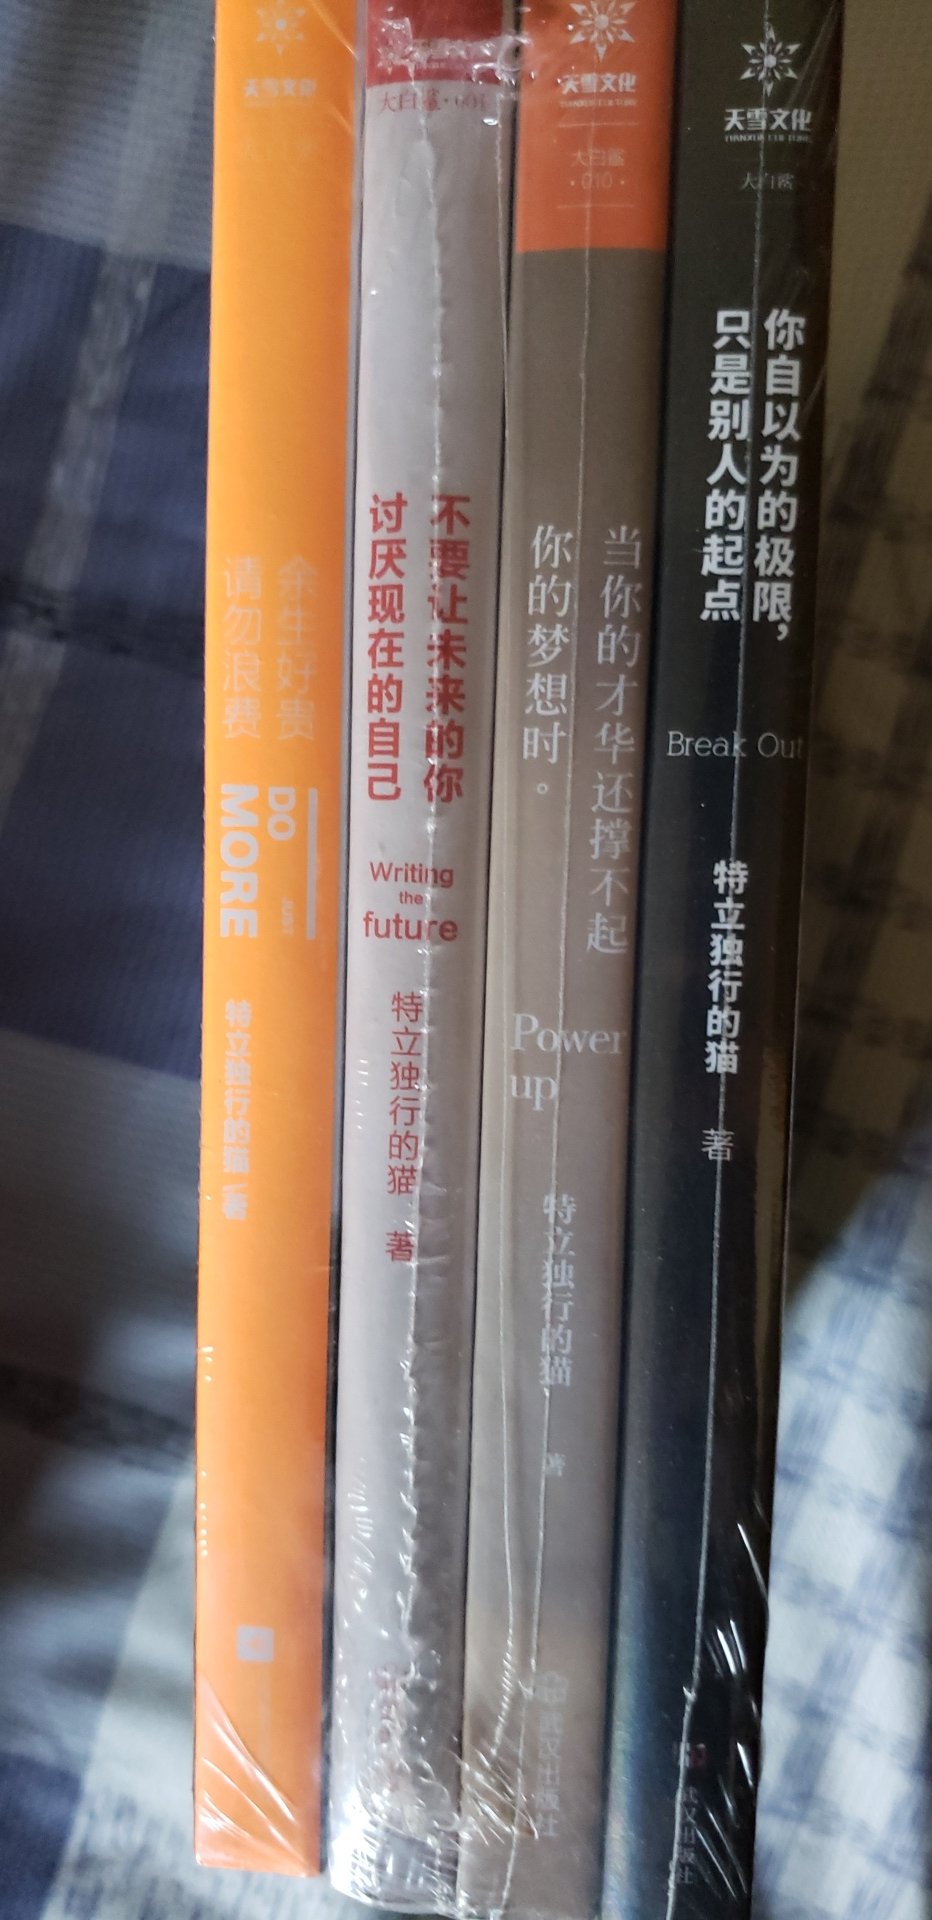 这四本比书店里2本还便宜，橙色这本我看了，很不错